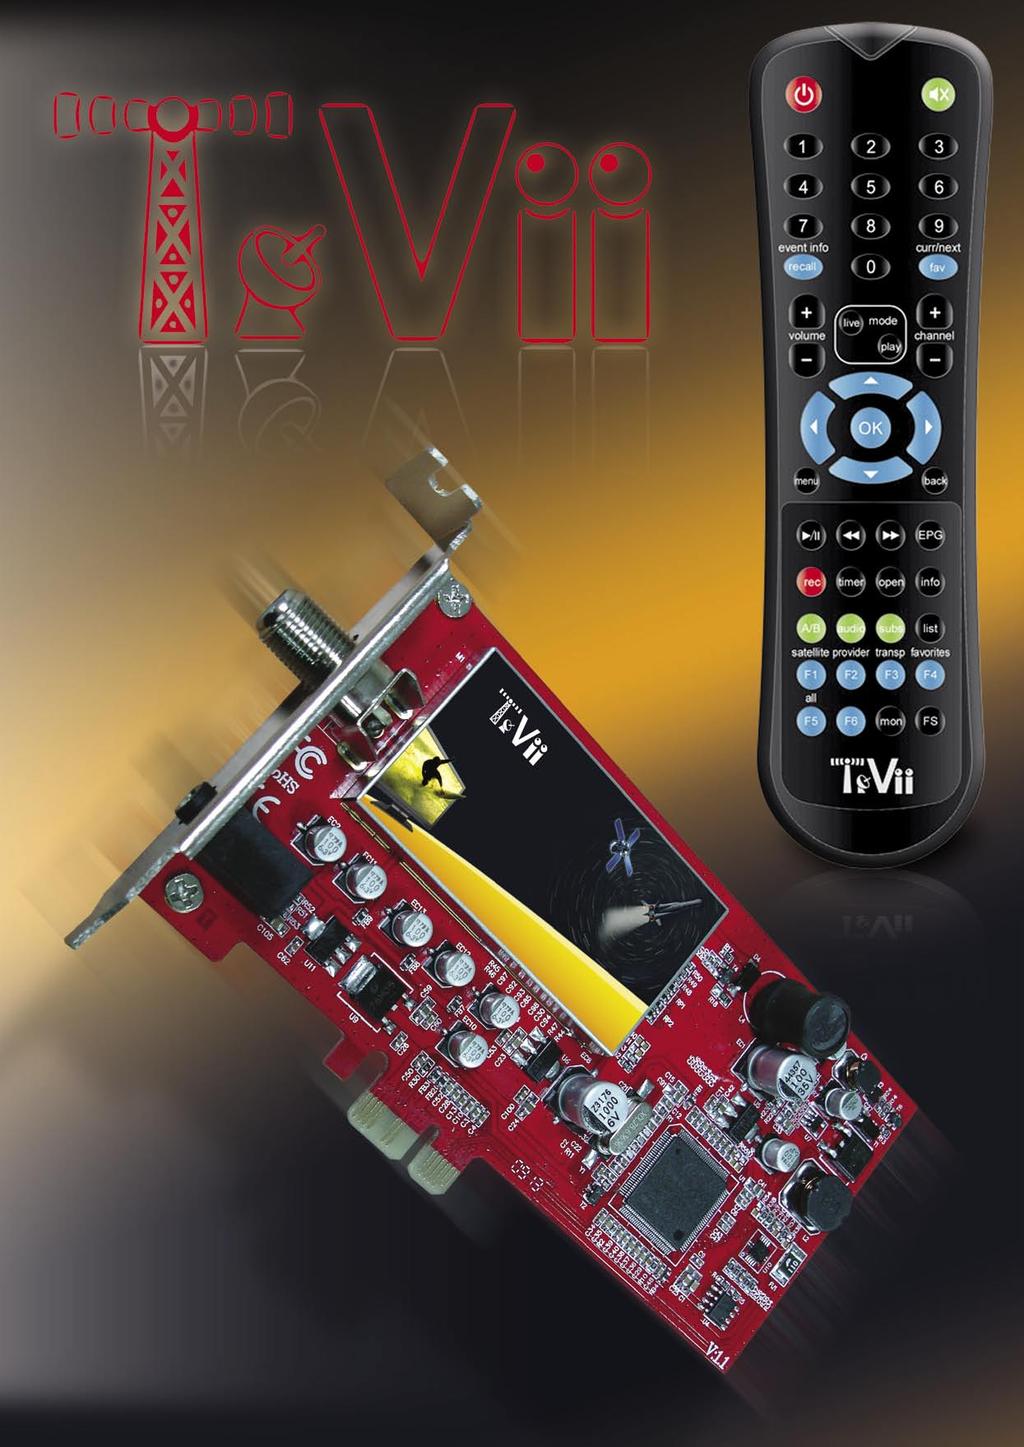 08-09/2009 TEVII DVB-S/S2 PCI-E CARD S470 Μια κομψή λύση για κανονική και HDTV λήψη σε